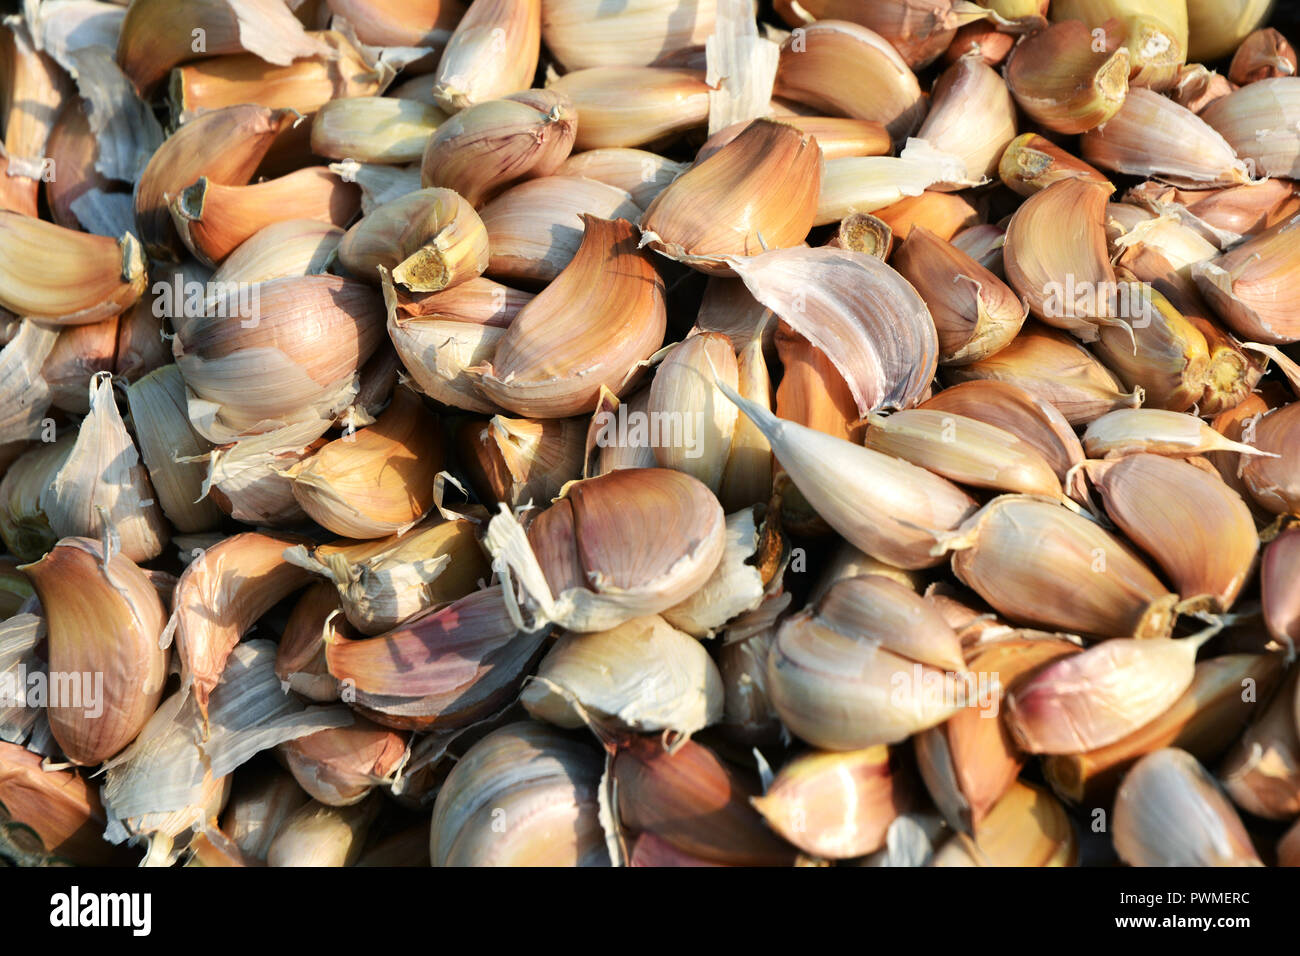 Common Garlic Allium Garlic in thai kitchen Stock Photo